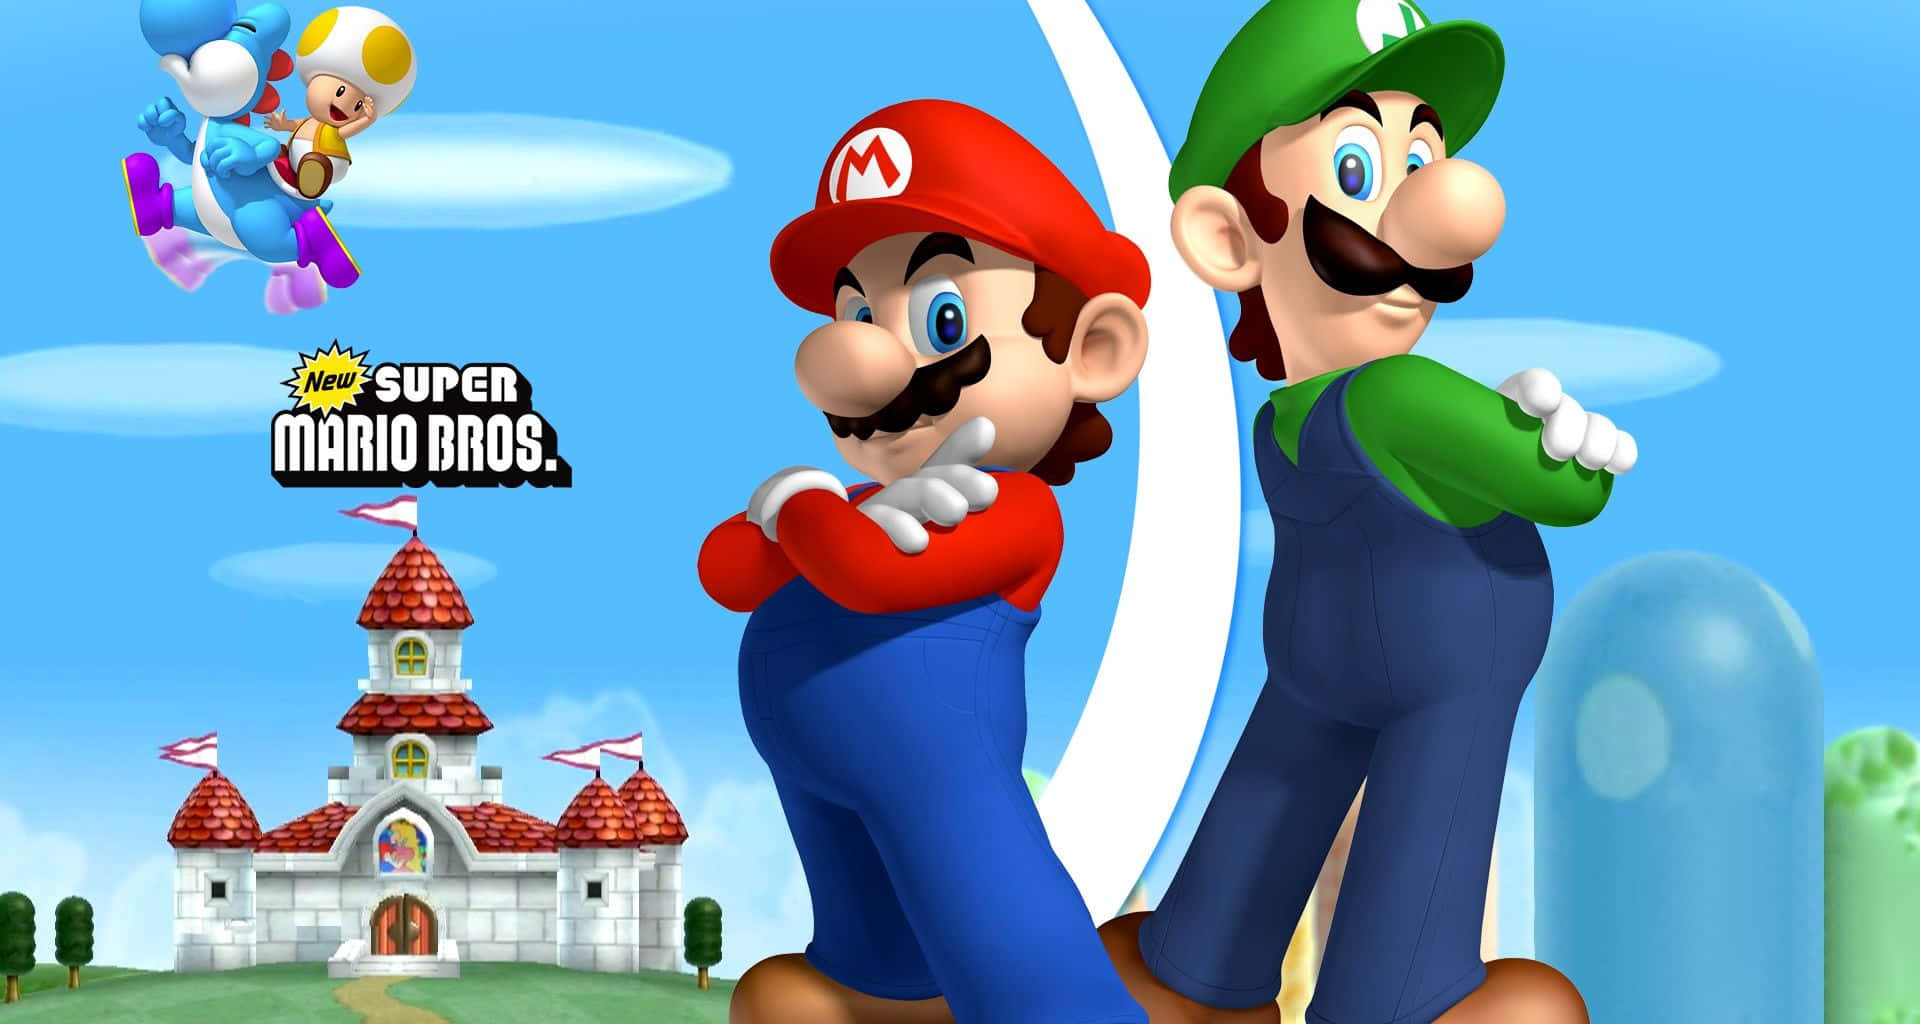 "Classic Design: Super Mario Bros"